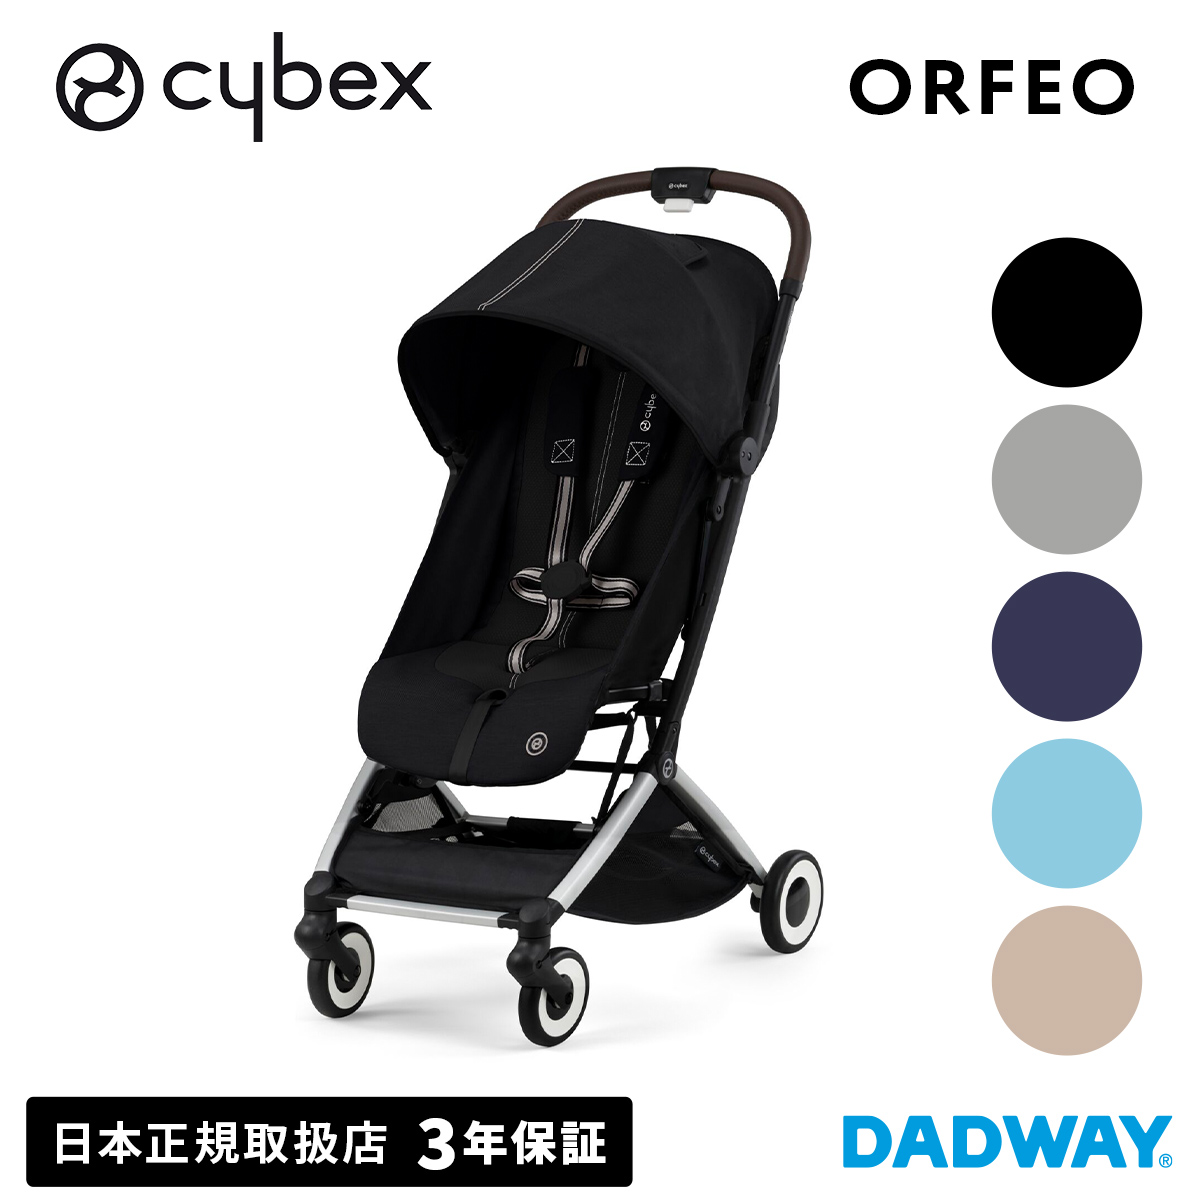 CYBEX サイベックス ORFEO A型 1ヶ月 オルフェオ|ベビーカー 軽量